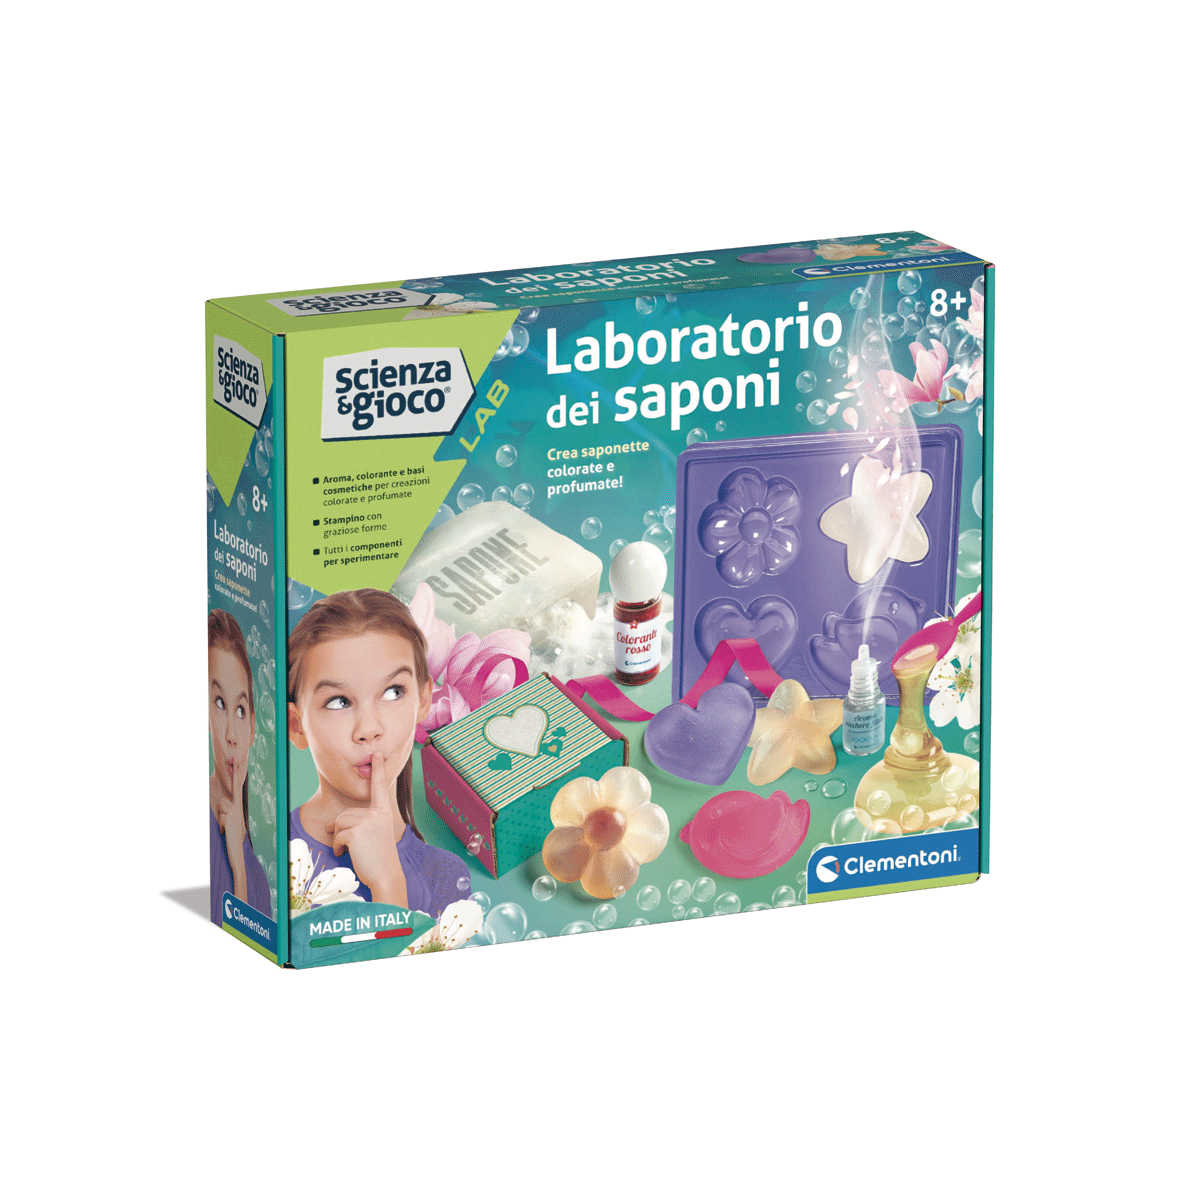 Clementoni - science & play lab - laboratorio dei saponi, 19229 - Scienza e Gioco